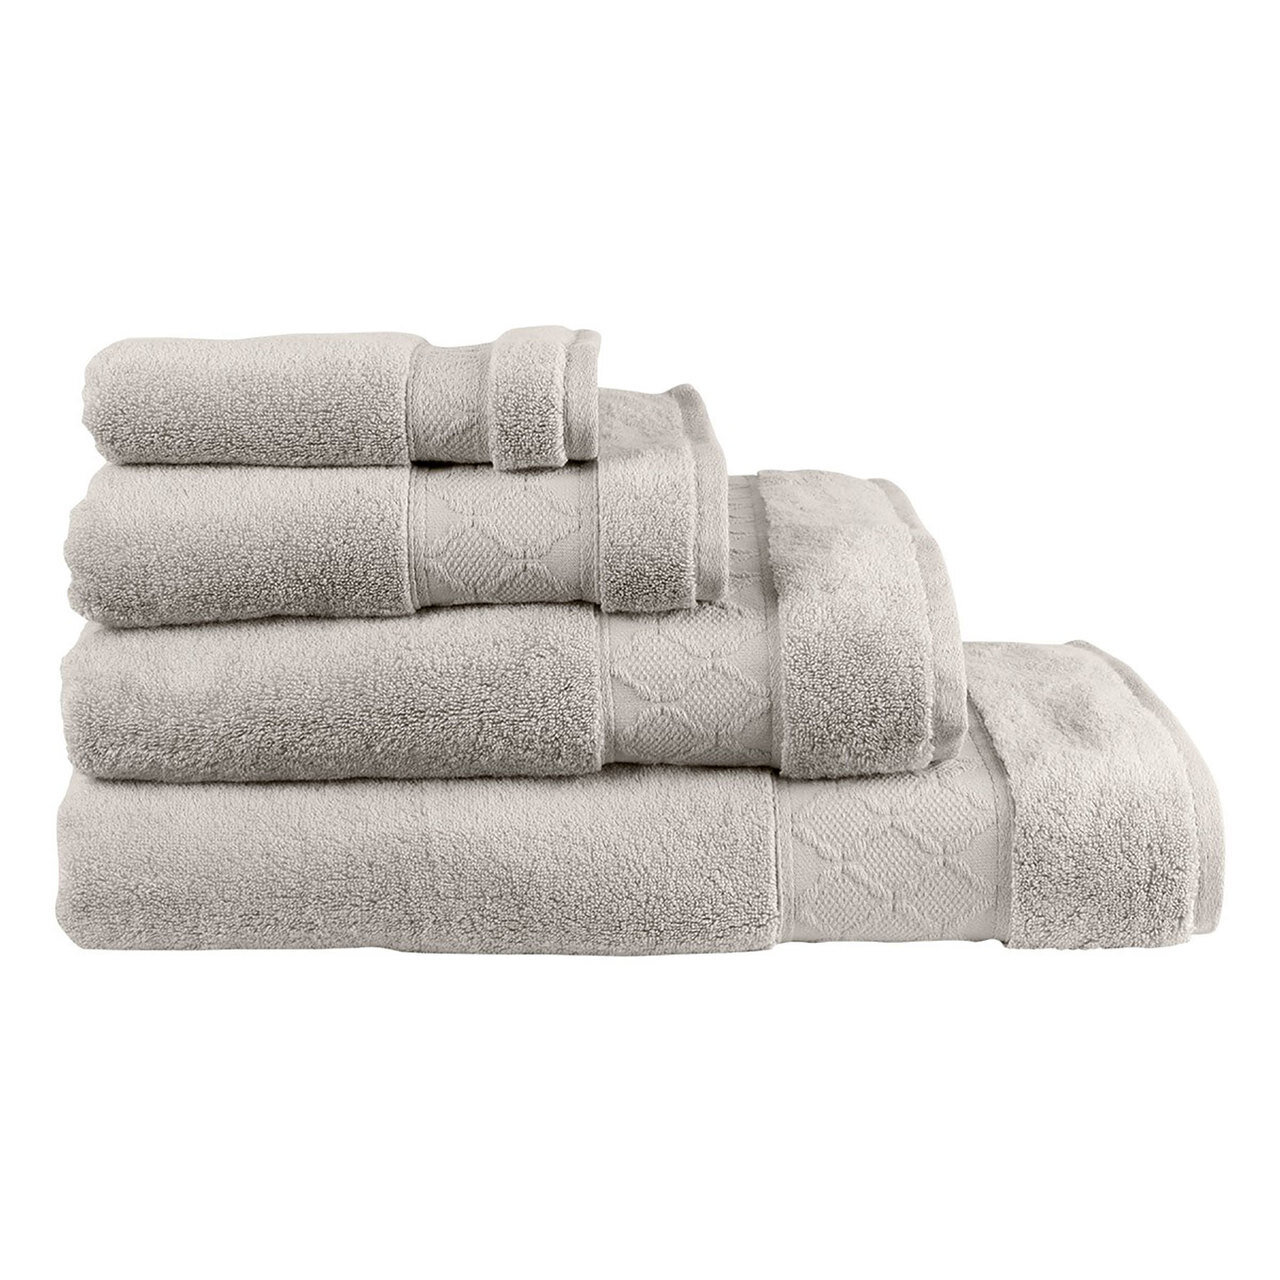 Le Jacquard Caresse Linen Guest Towel 12x20 Set of 4